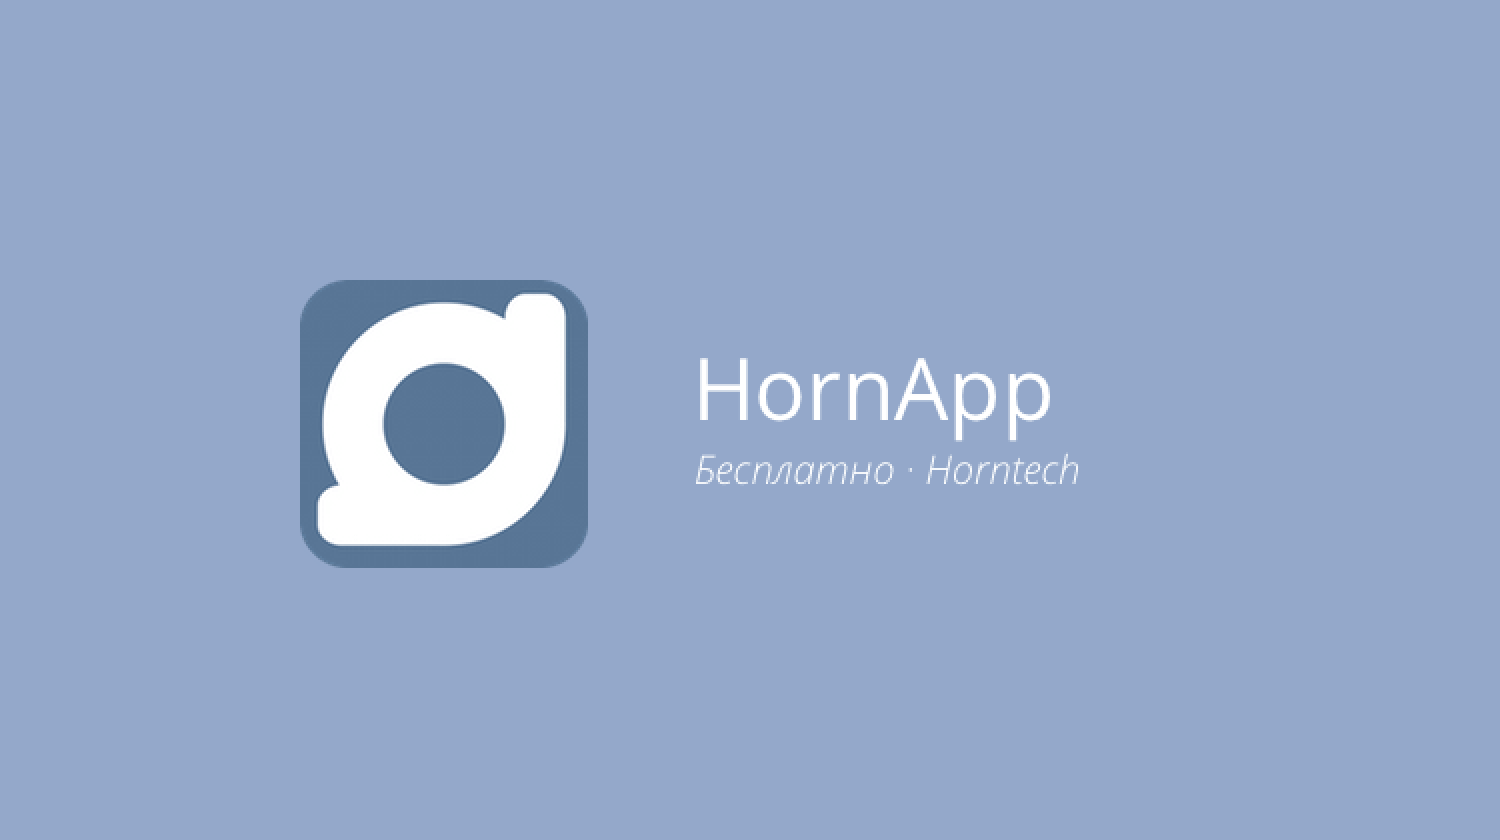 HornApp — делимся самым сокровенным в полной анонимности. Фото.